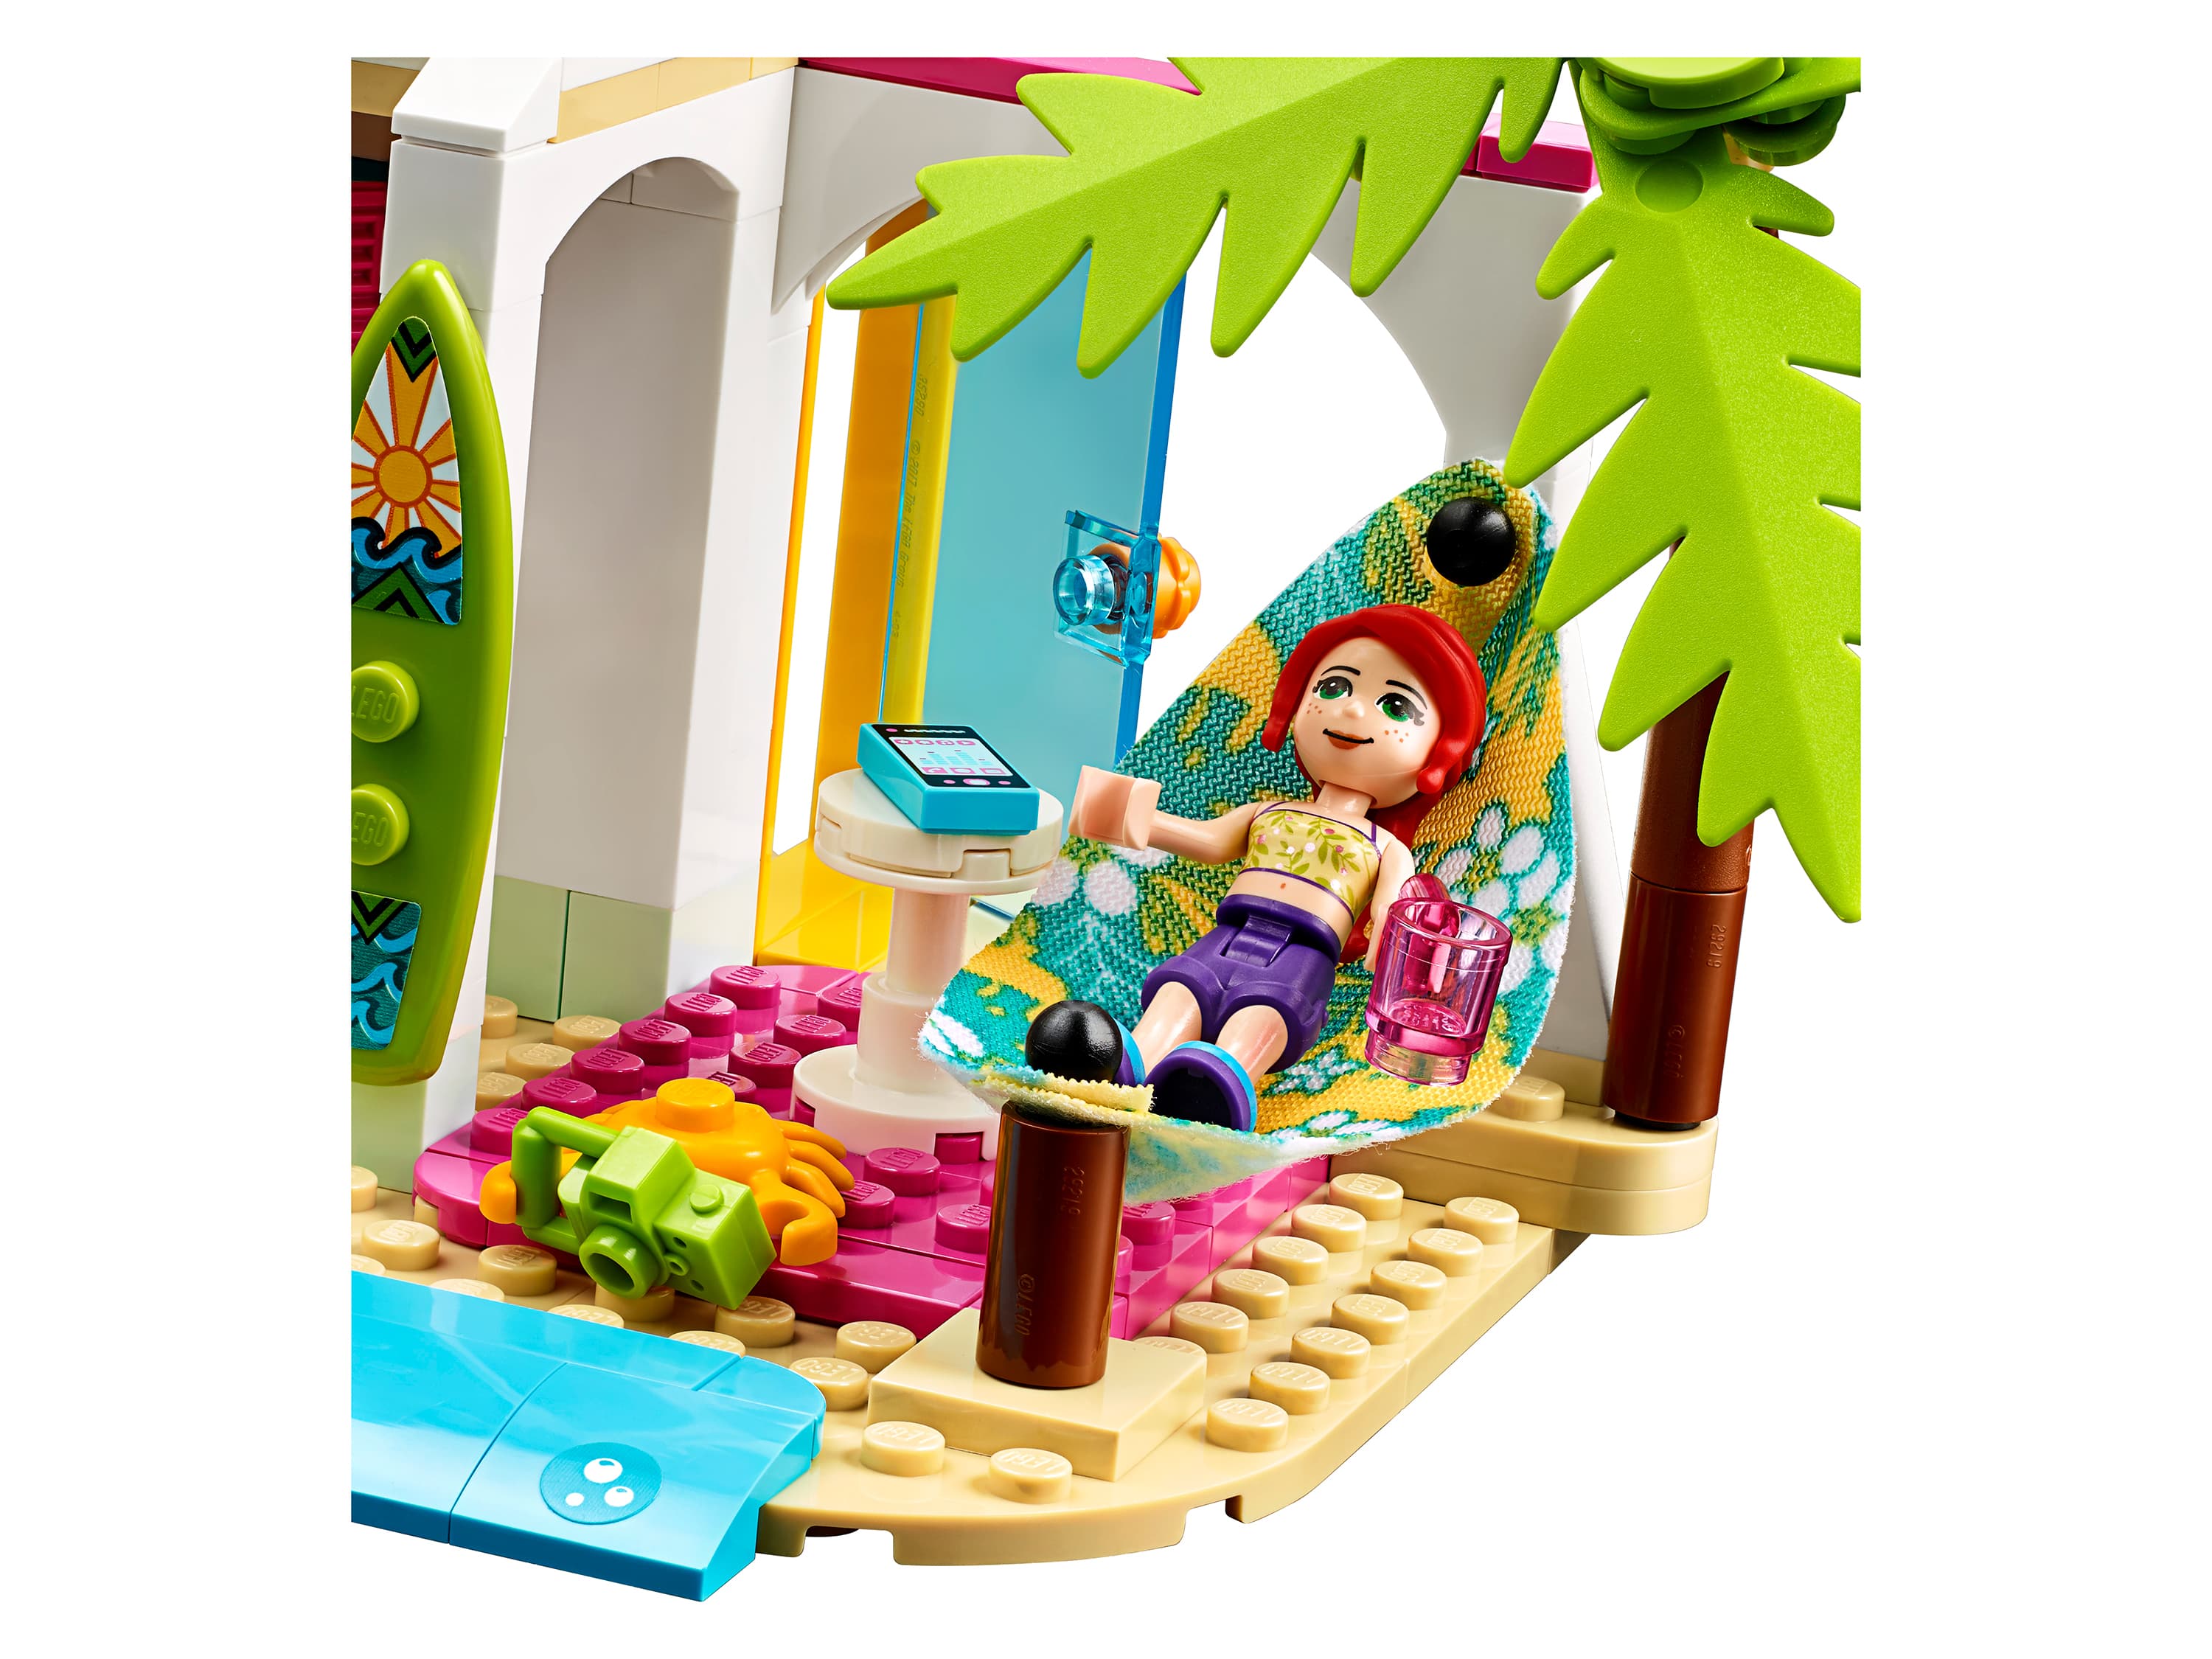 Конструктор LEGO Friends «Пляжный домик»  41428 / 444 детали